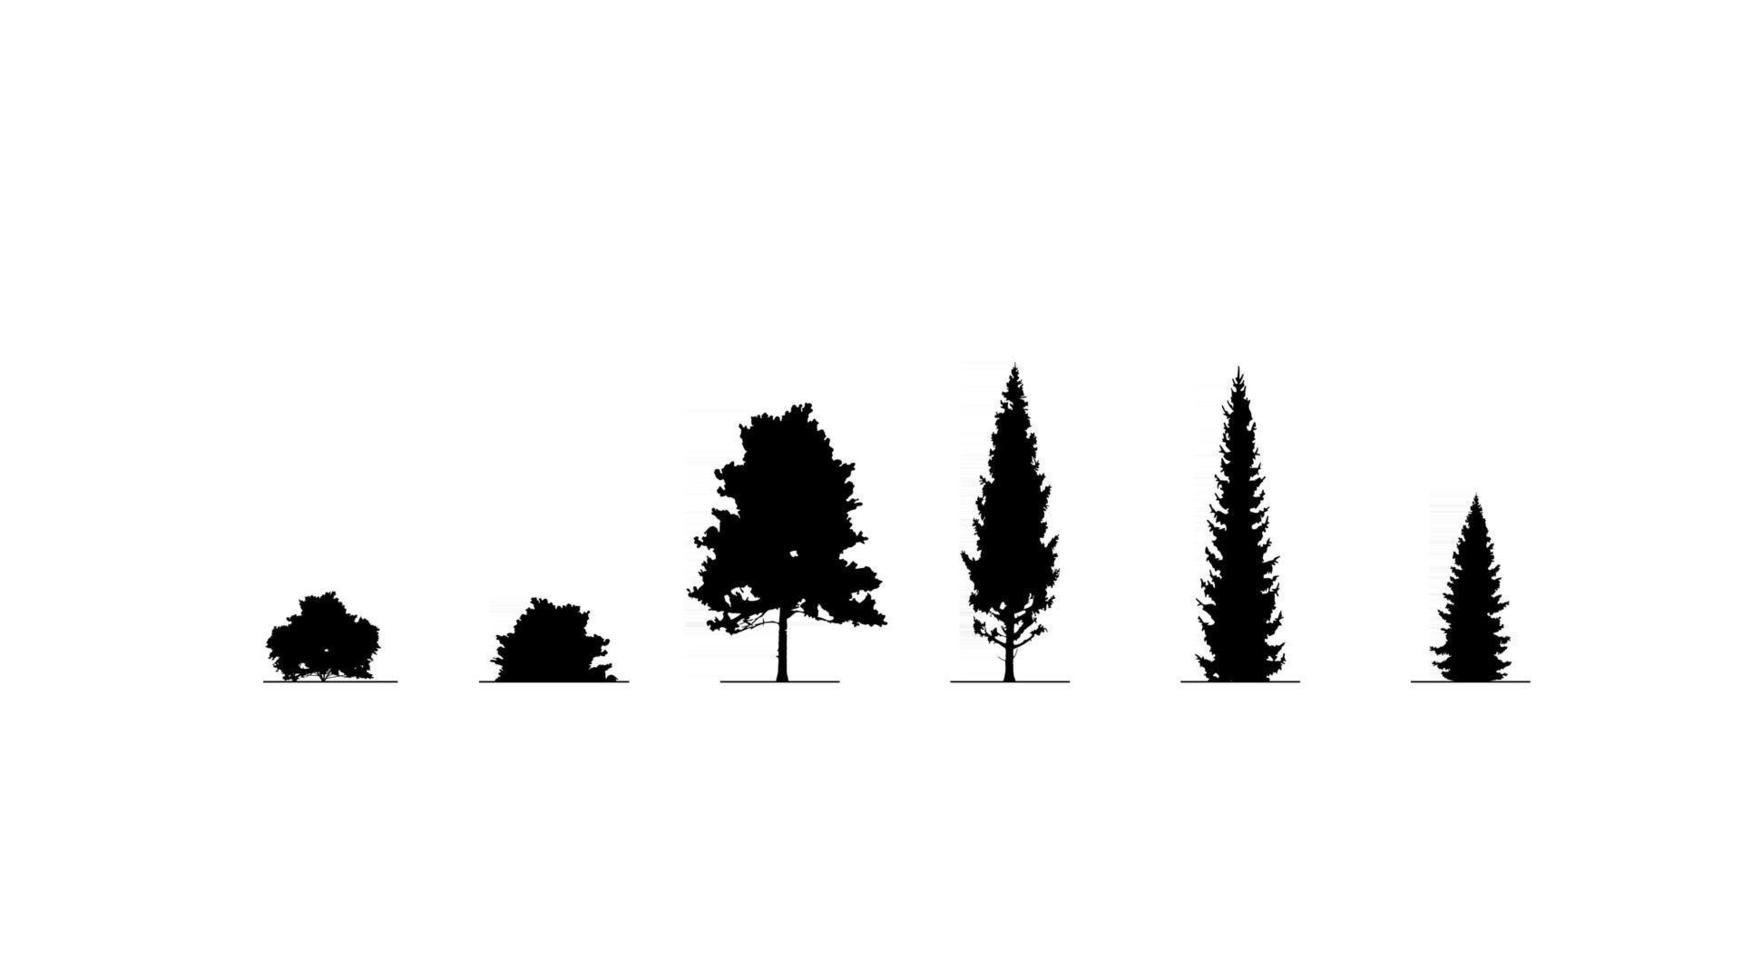 uppsättning svartvita träd och buskar isolerad på vit bakgrund vektor